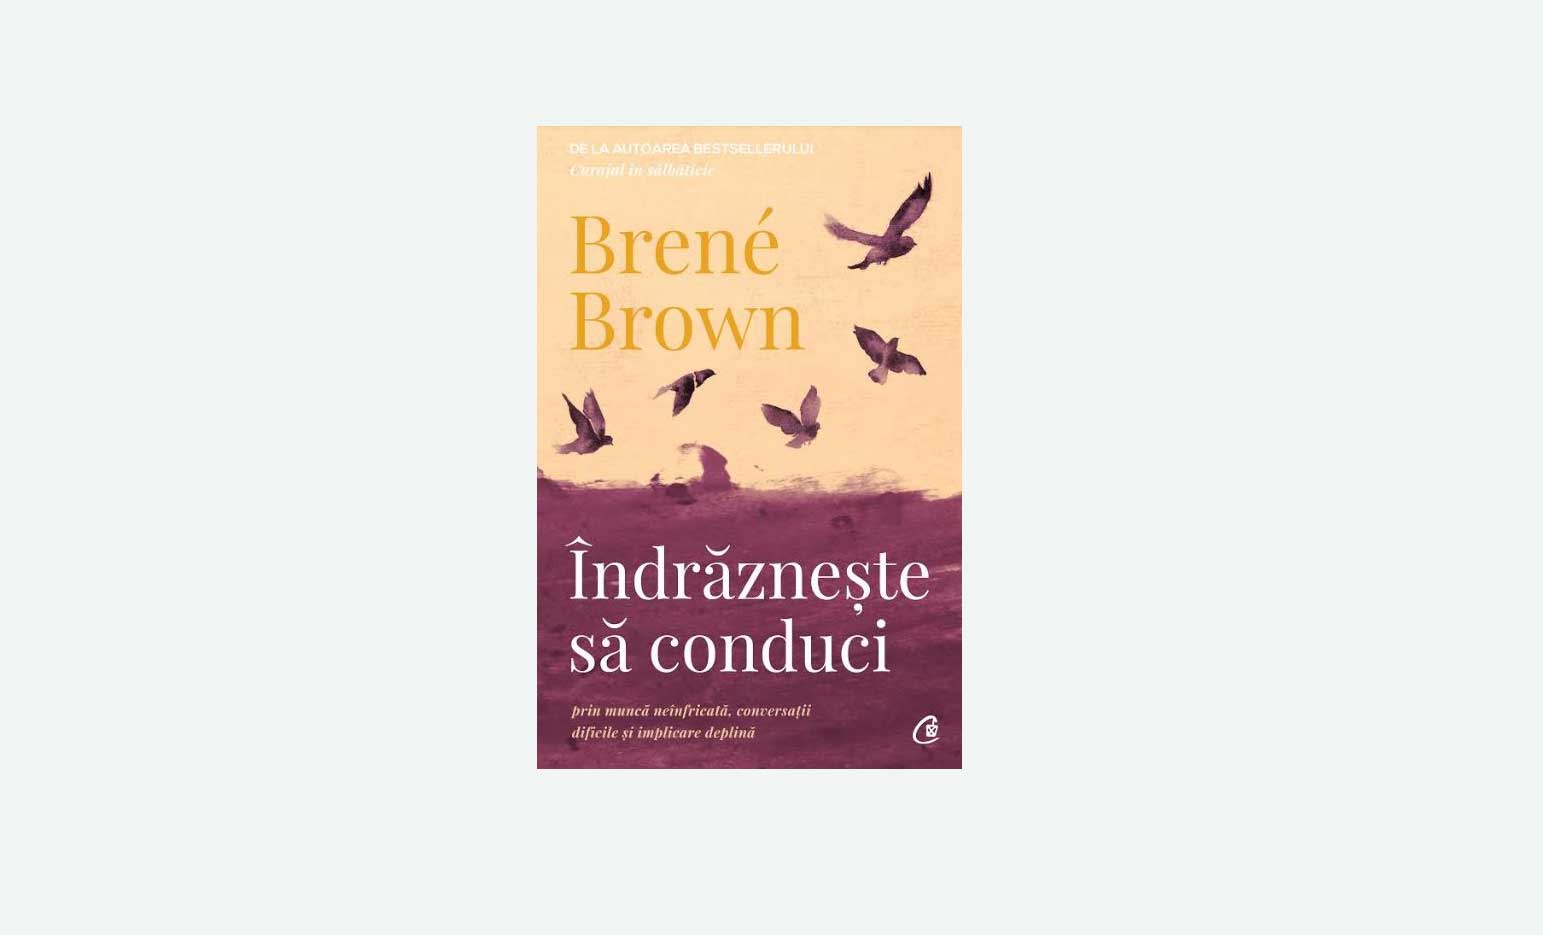 Îndrăznește să conduci prin muncă neînfricată, conversații dificile și implicare deplină | Brené Brown